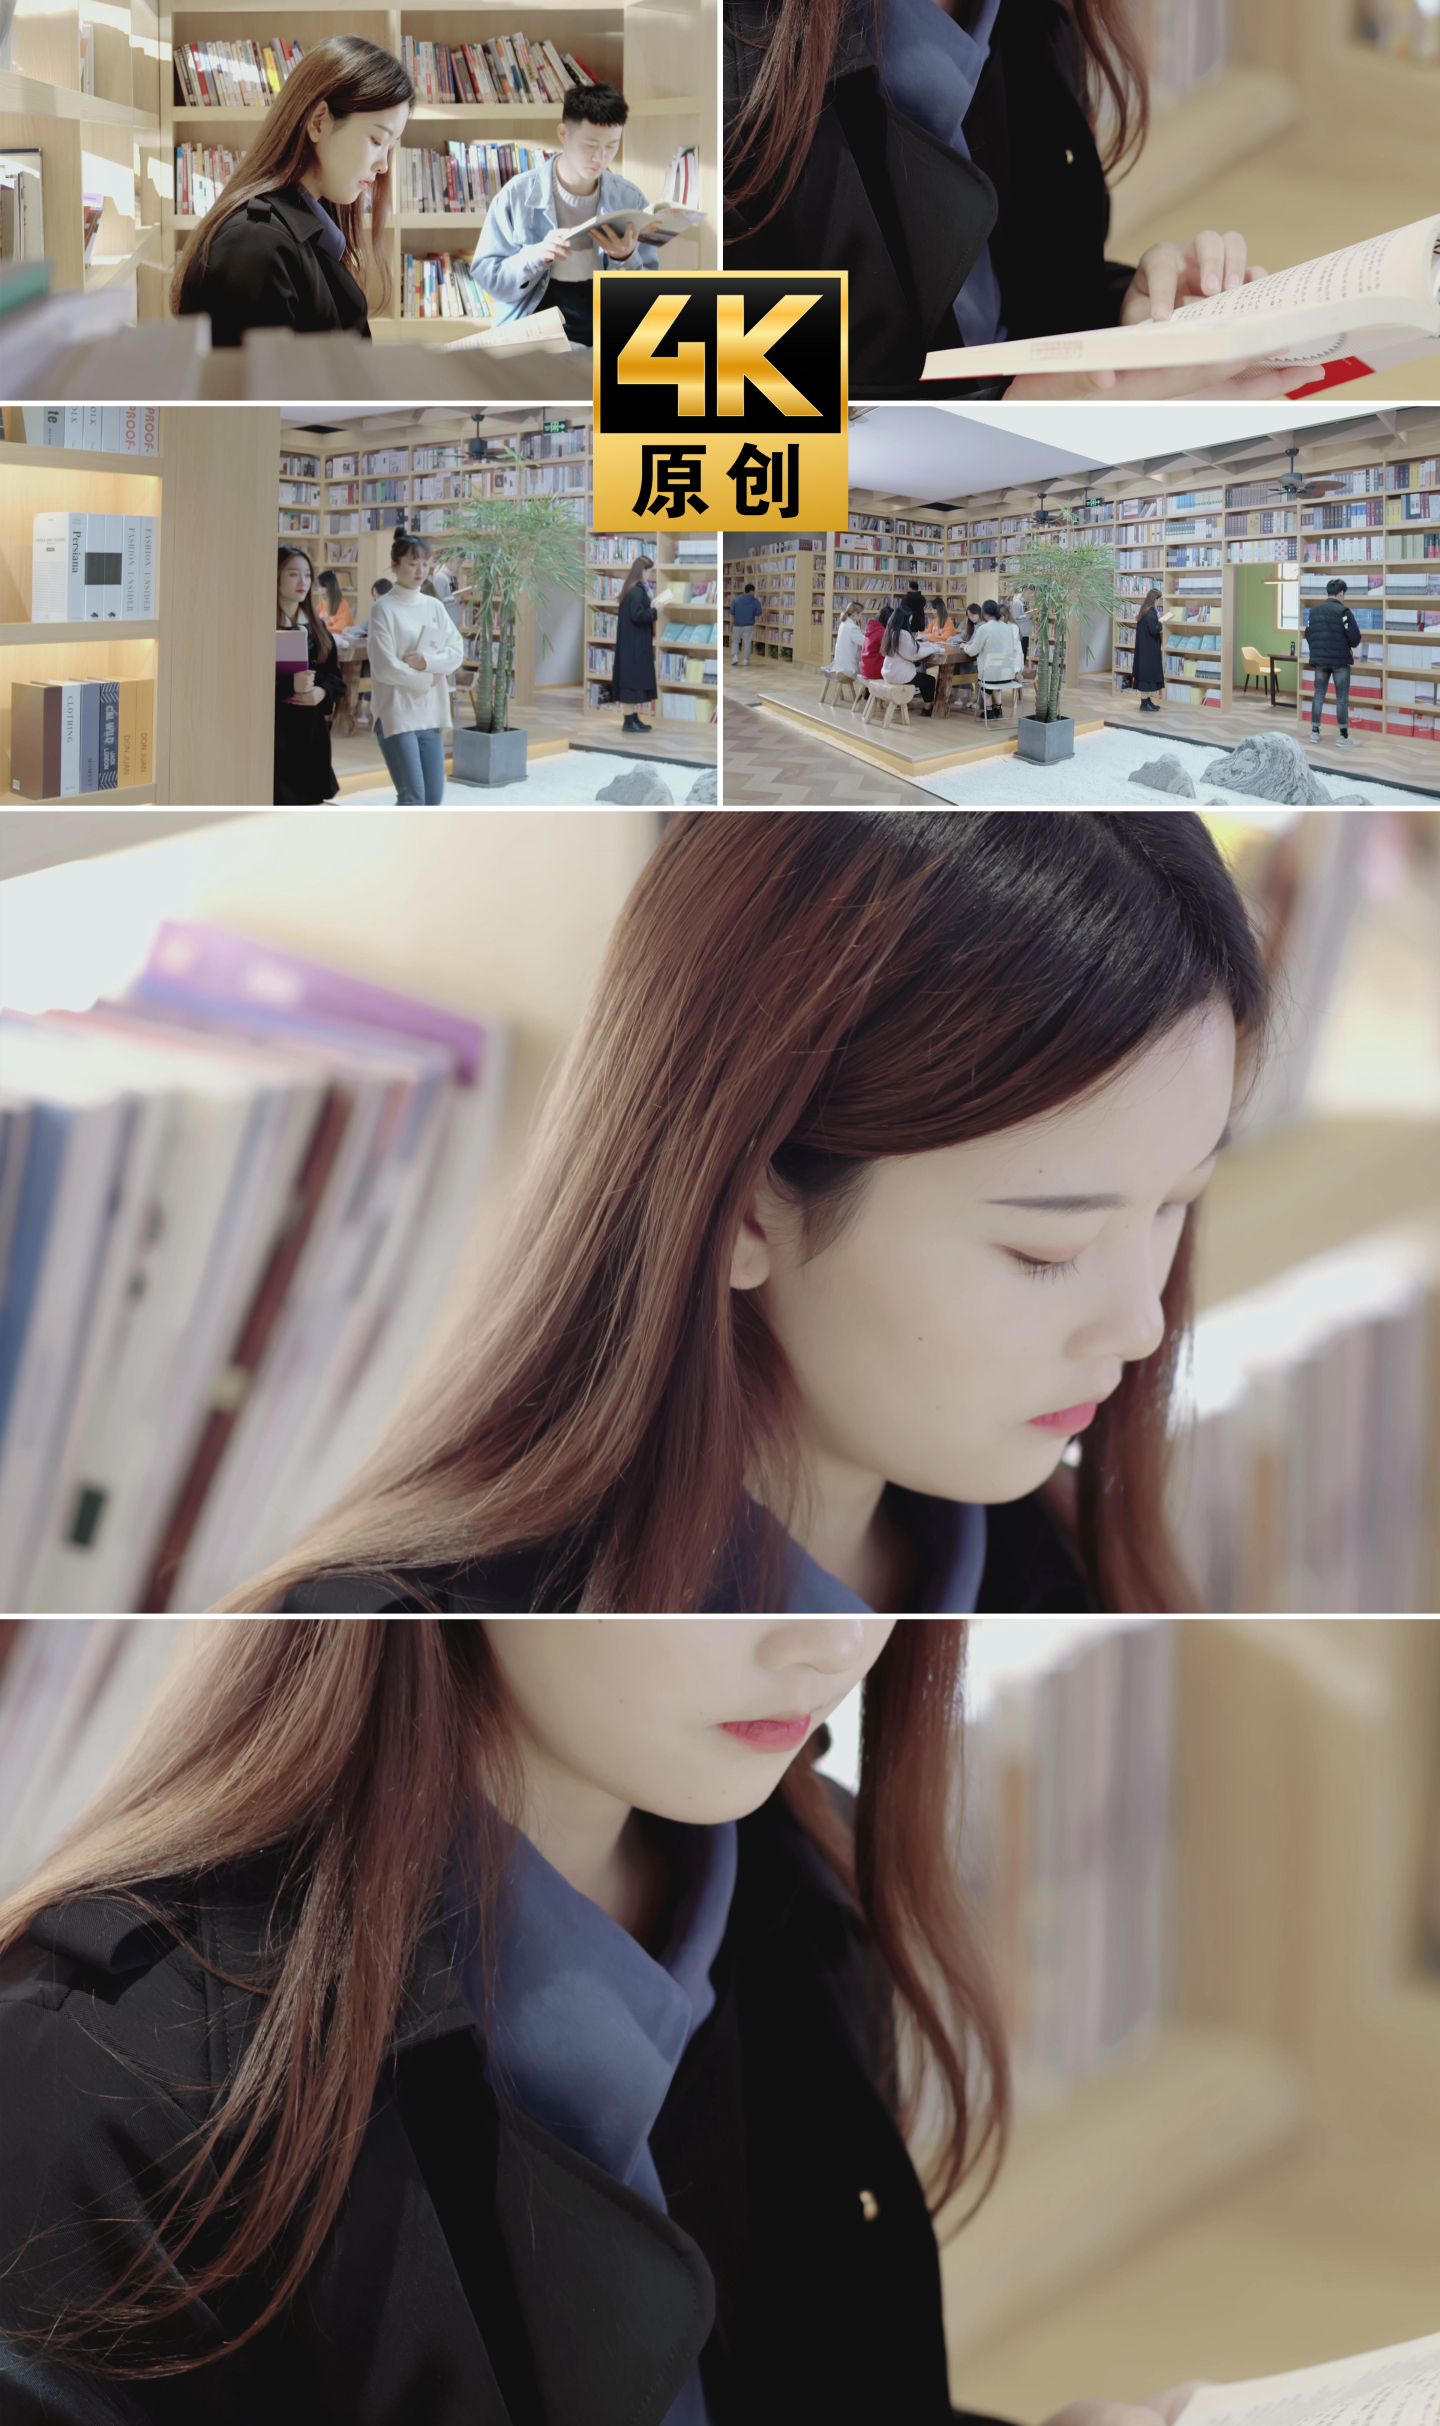 【4K】图书馆美女看书女生看书阅读